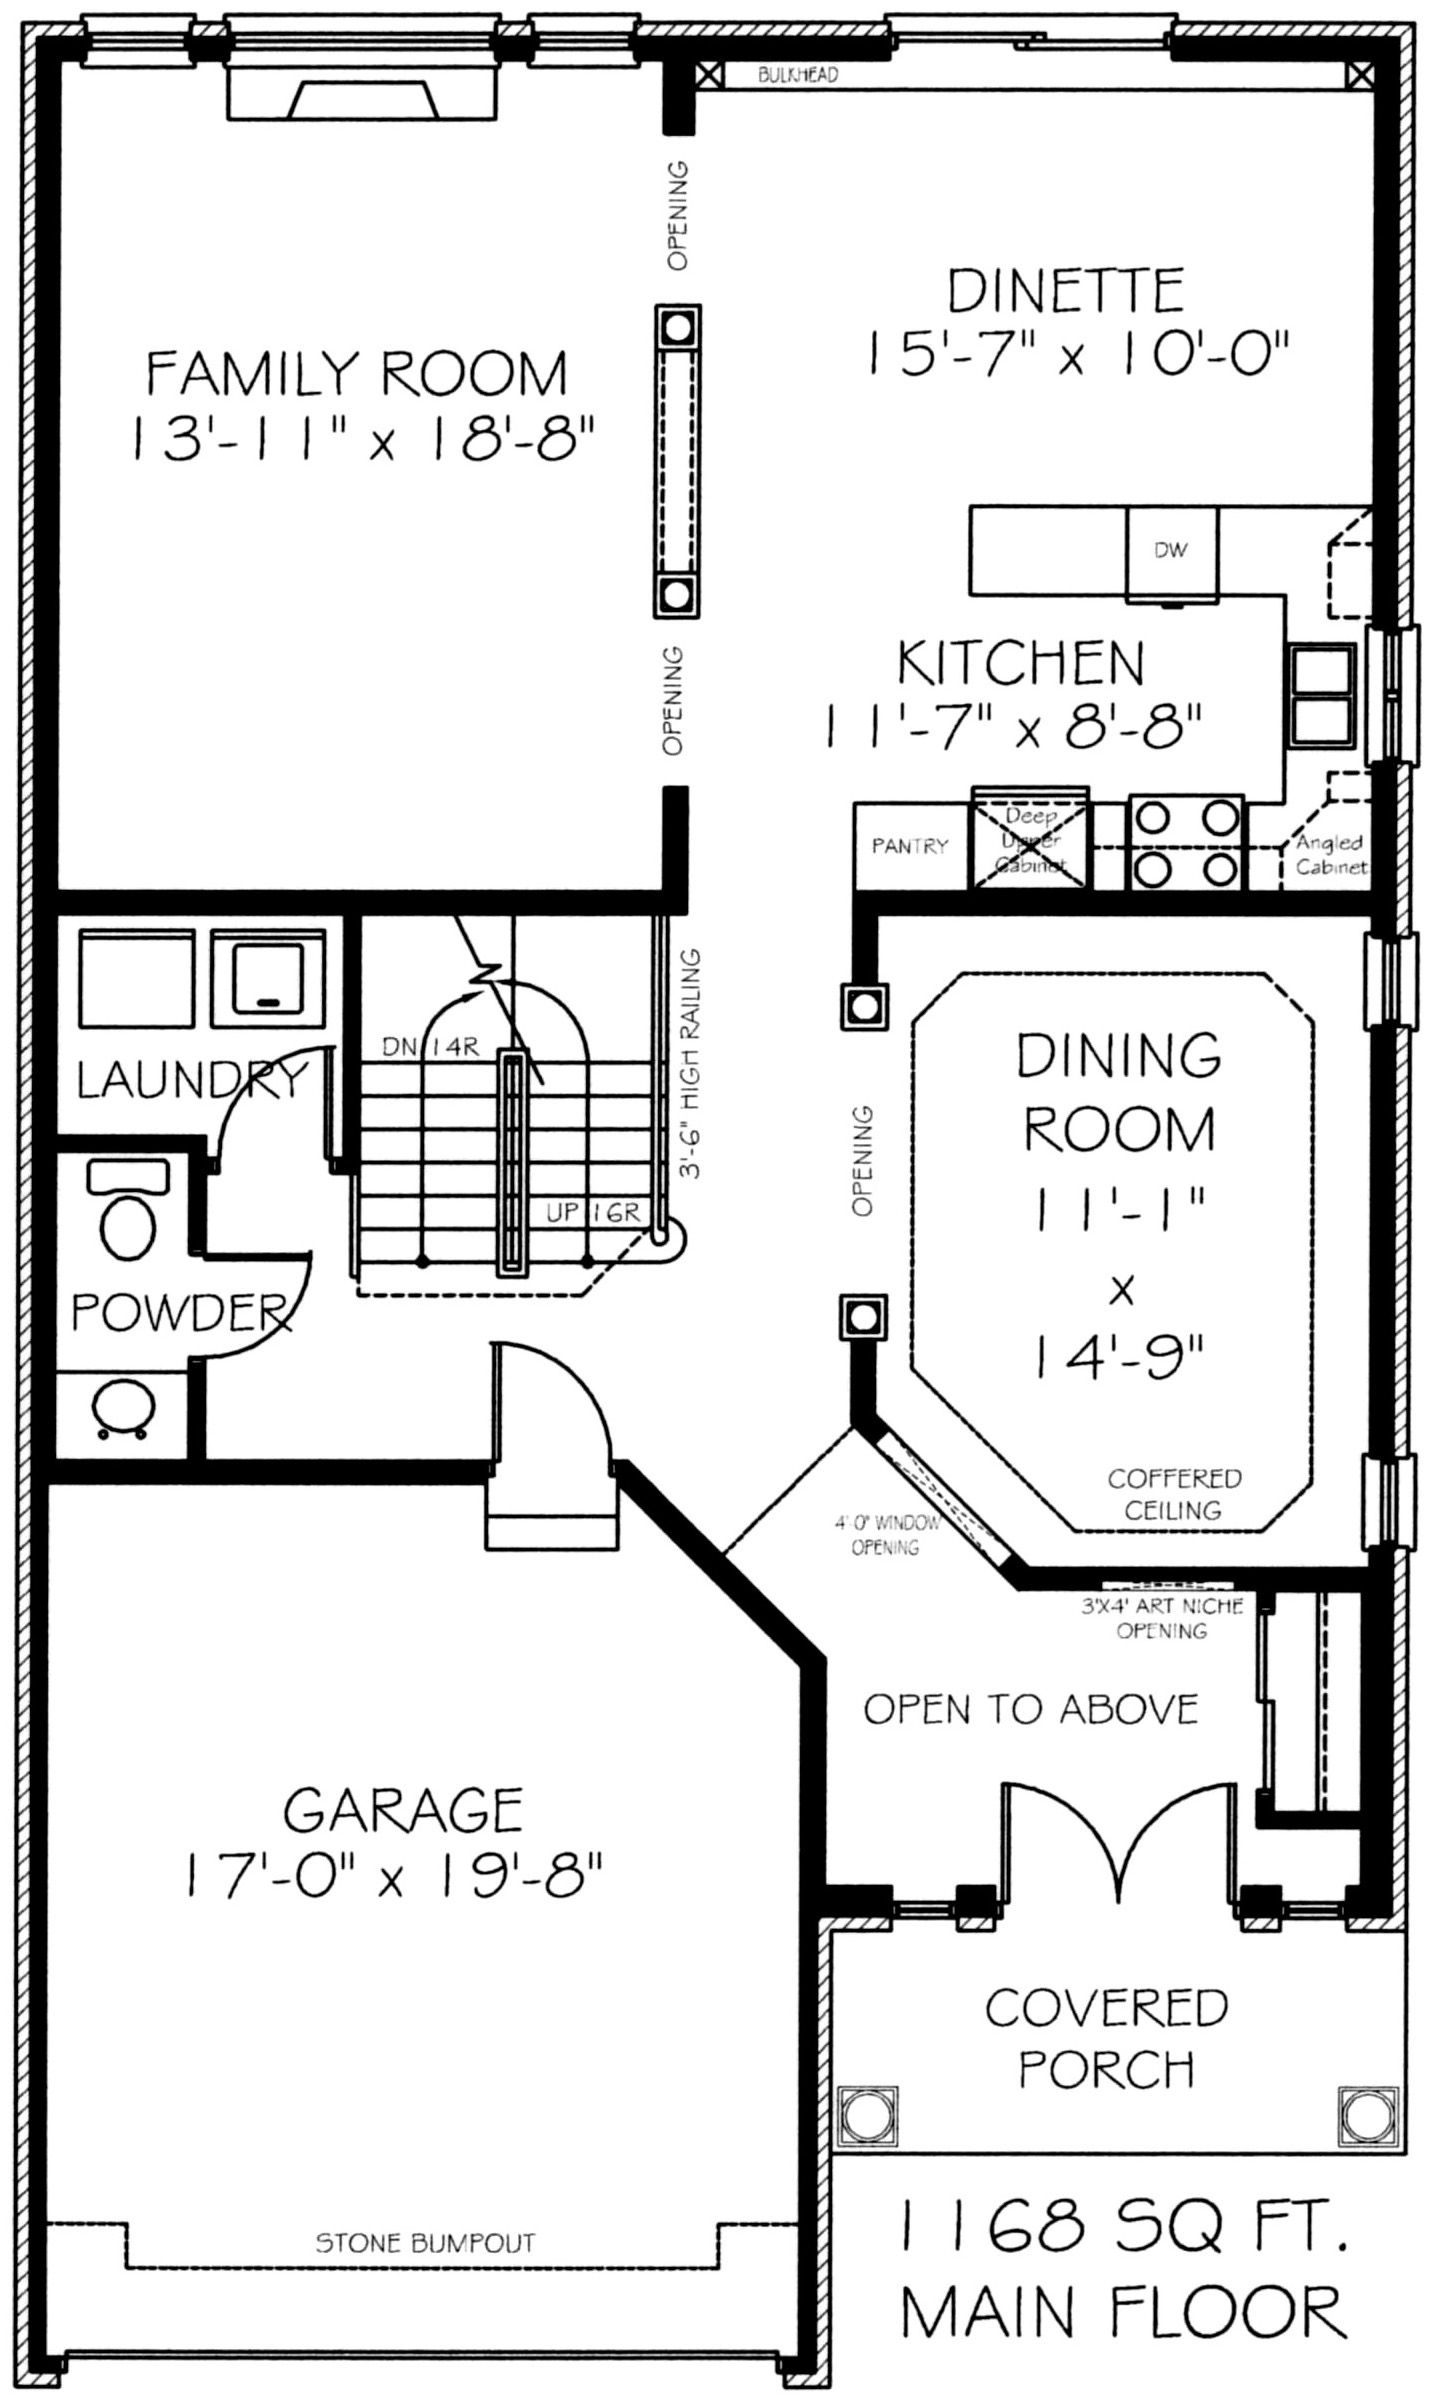 The remington - Main Floor - Floorplan